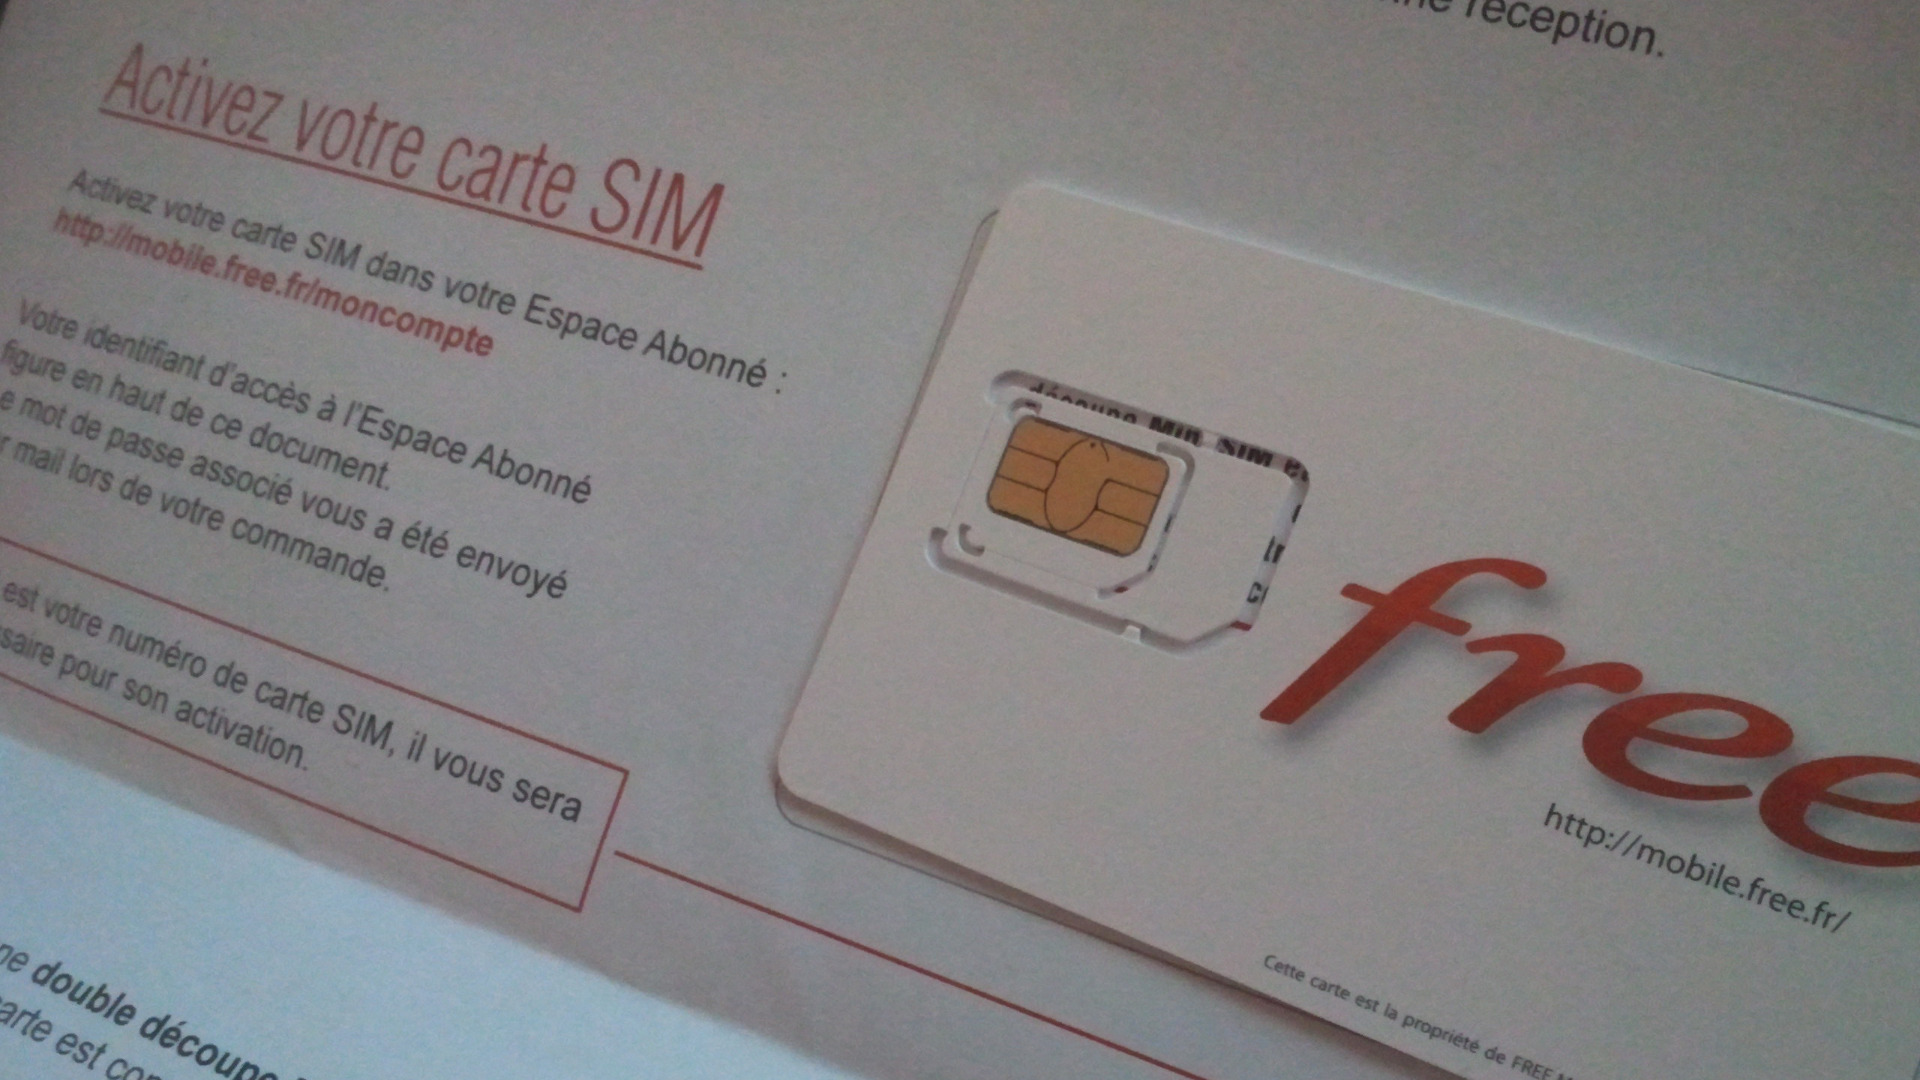 Free Mobile : désormais, pour changer de carte SIM, vous paierez 10 euros